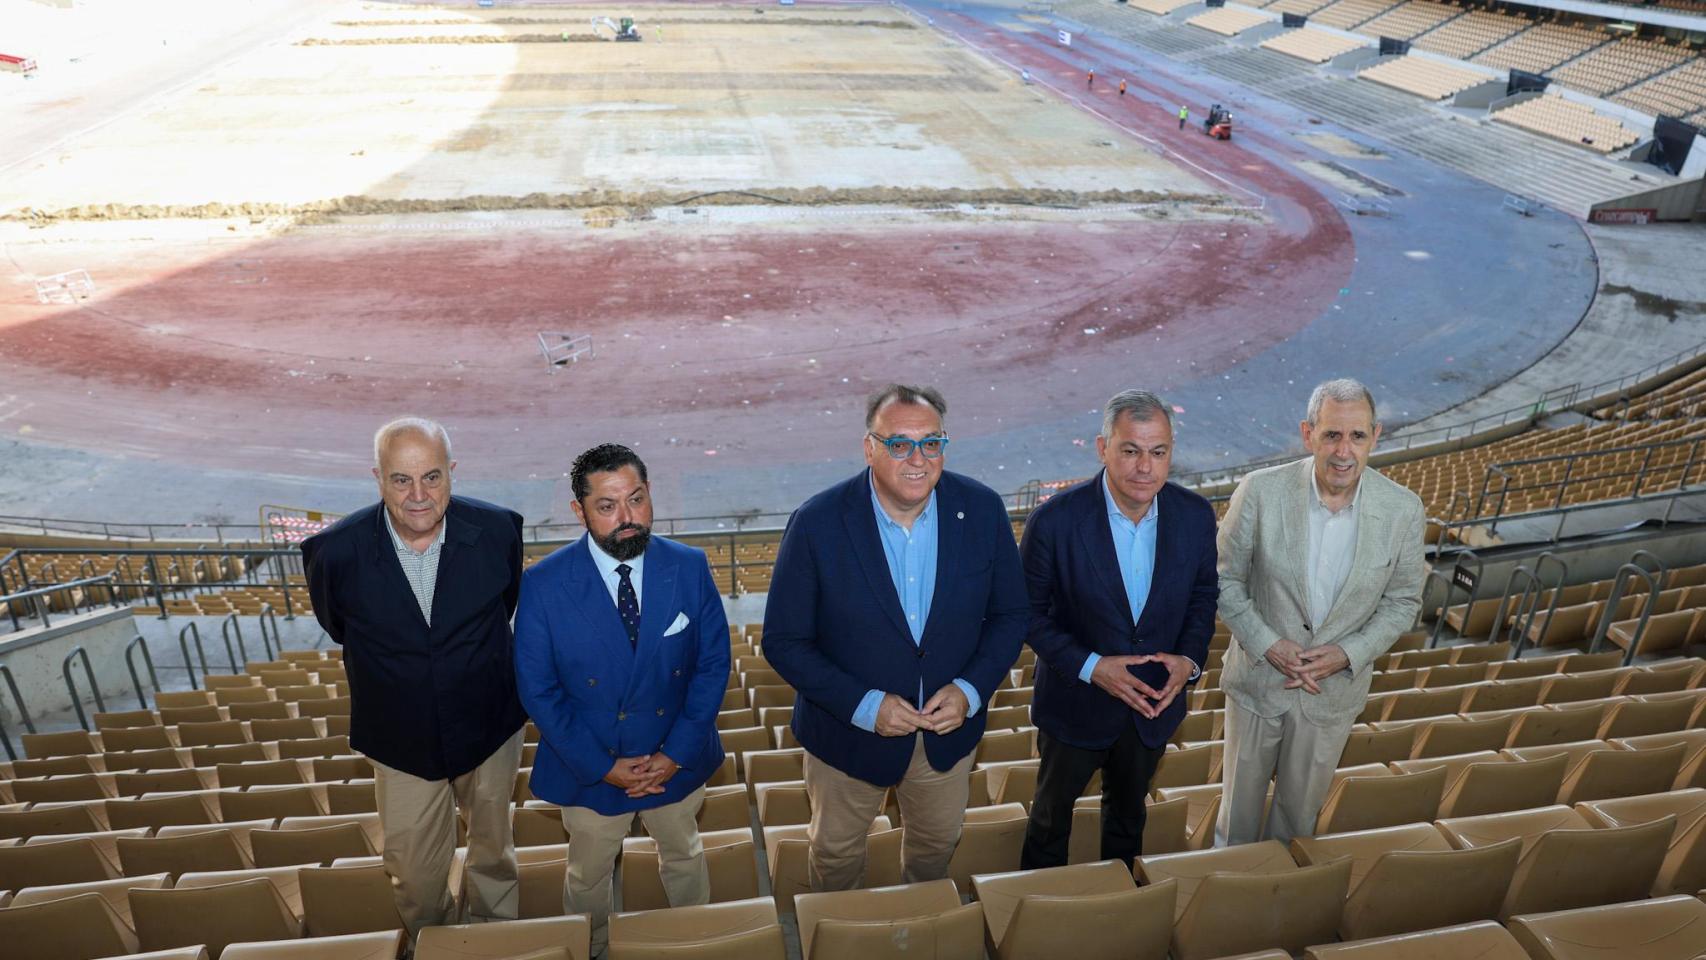 La primera  remodelación del estadio de La Cartuja estará terminada en ocho meses, las obras acabarán en abril